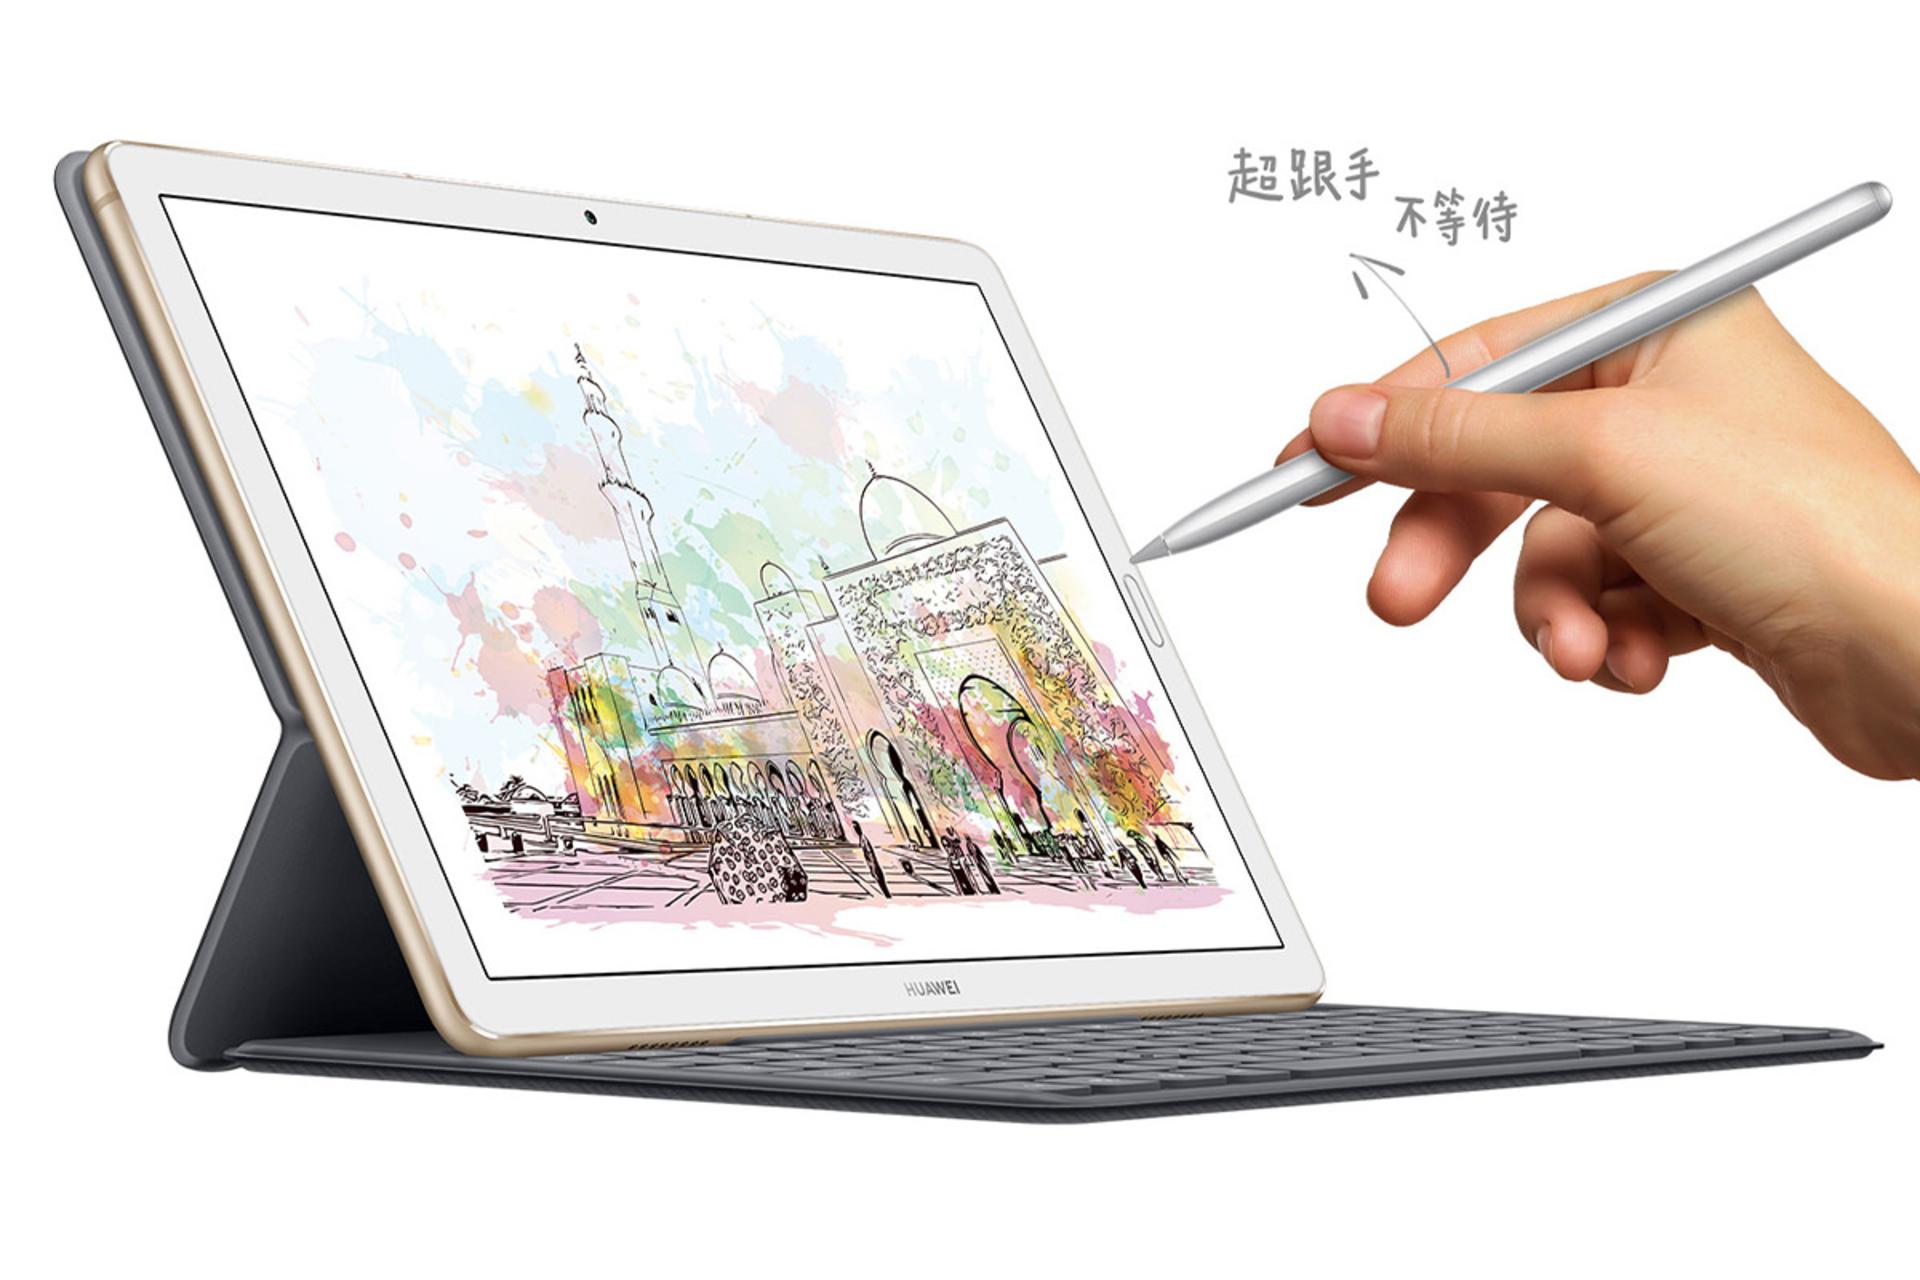 تبلت میت پد 10.8 هواوی نمای جلو - صفحه نمایش - قلم - صفحه کلید / Huawei MatePad 10.8